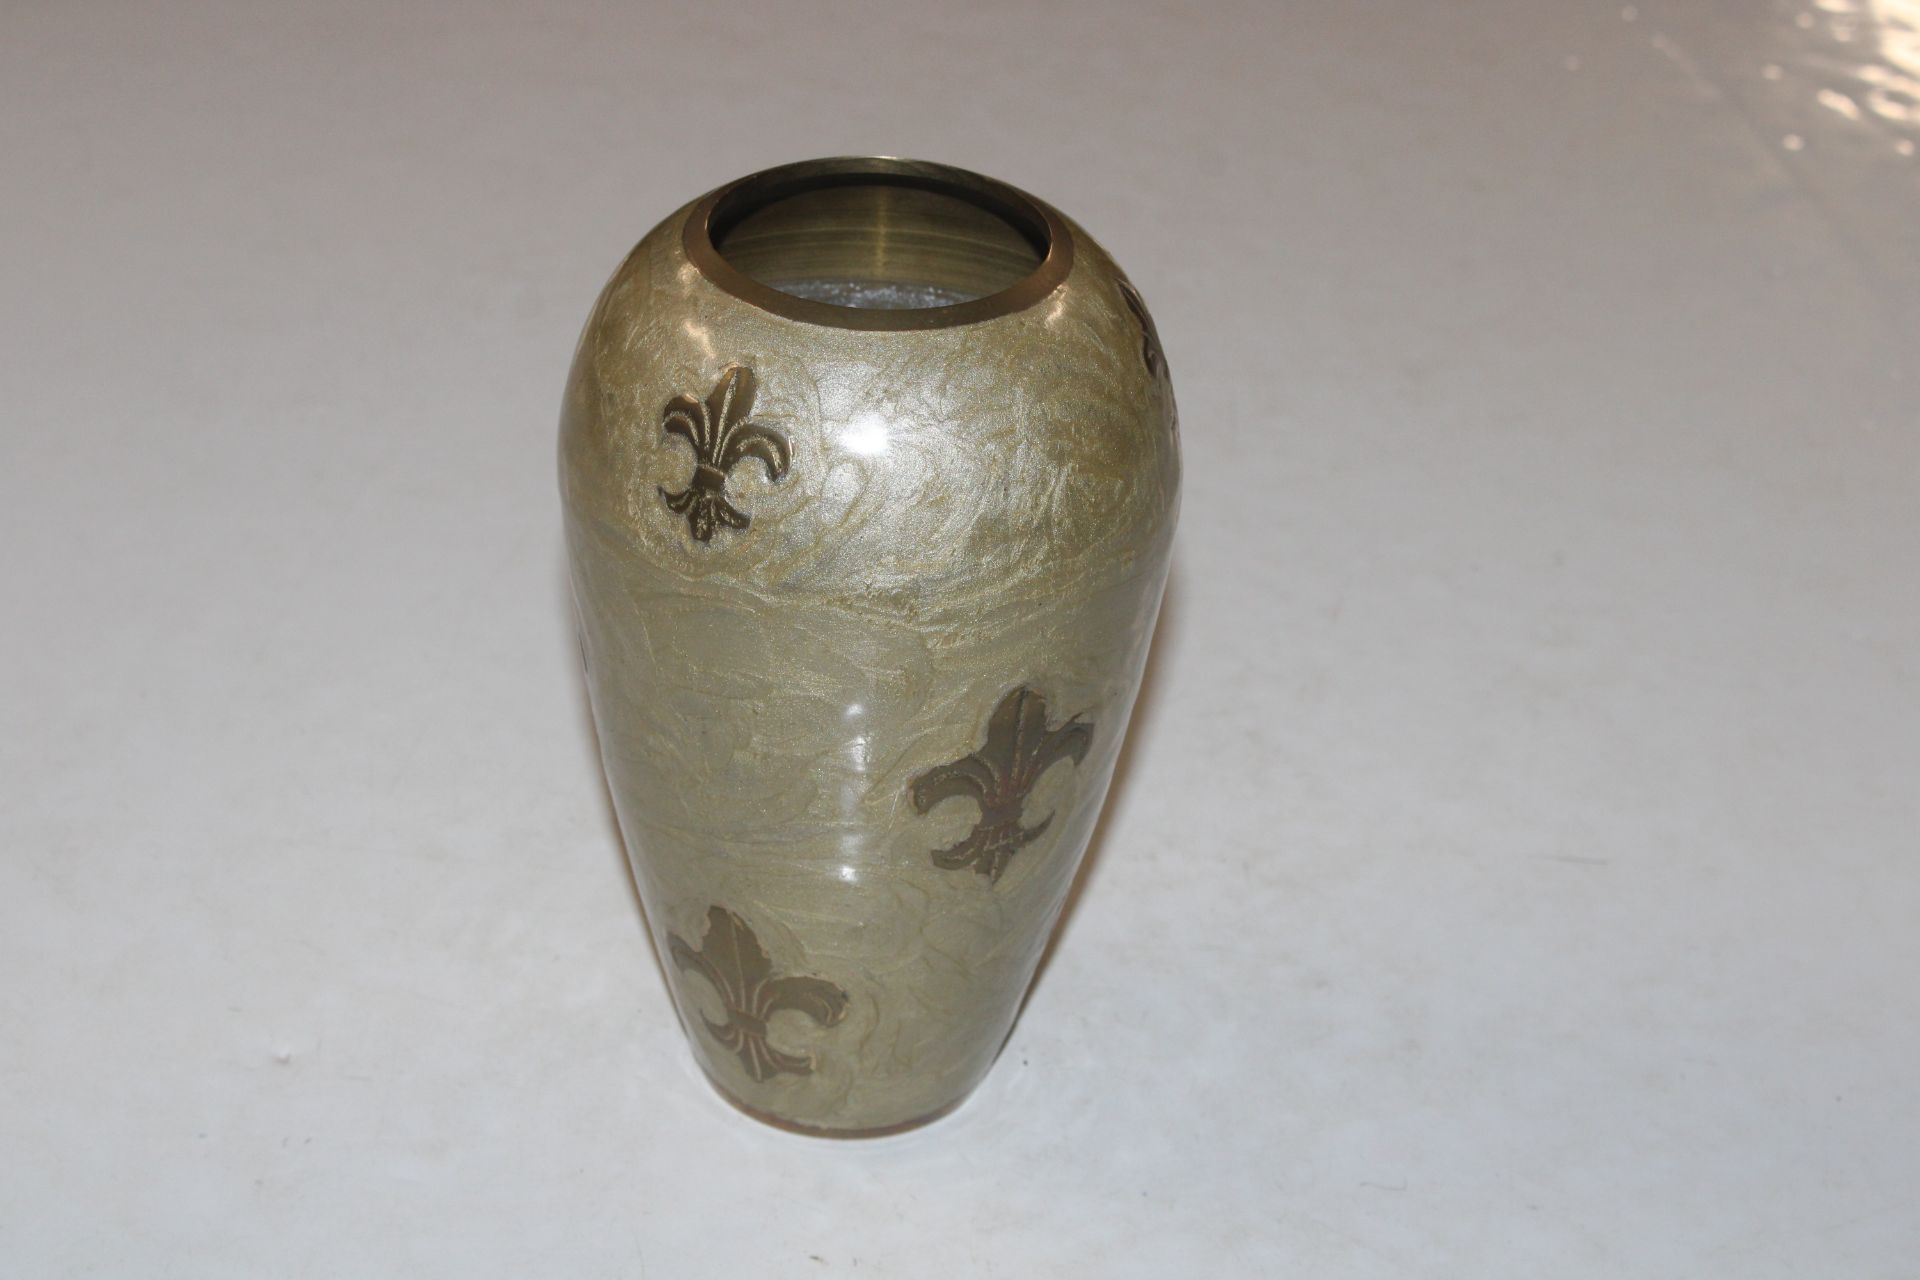 A brass vase with Fleur de Lys decoration